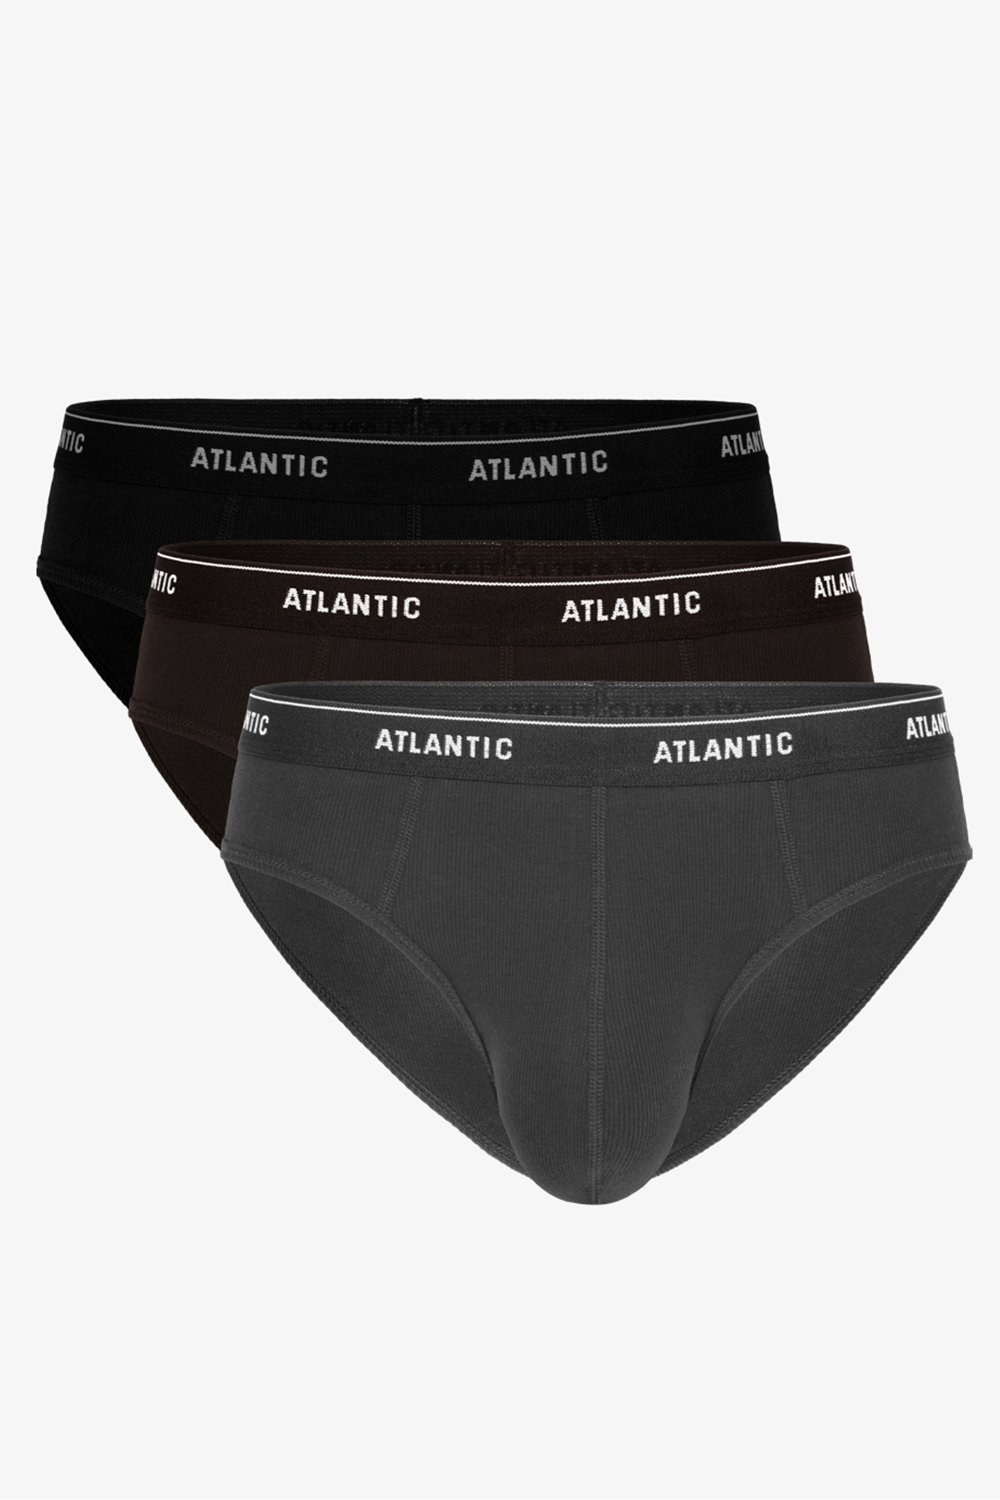 Atlantic 3MP-157 Majtki slipy, grafit-czarny-czekoladowy